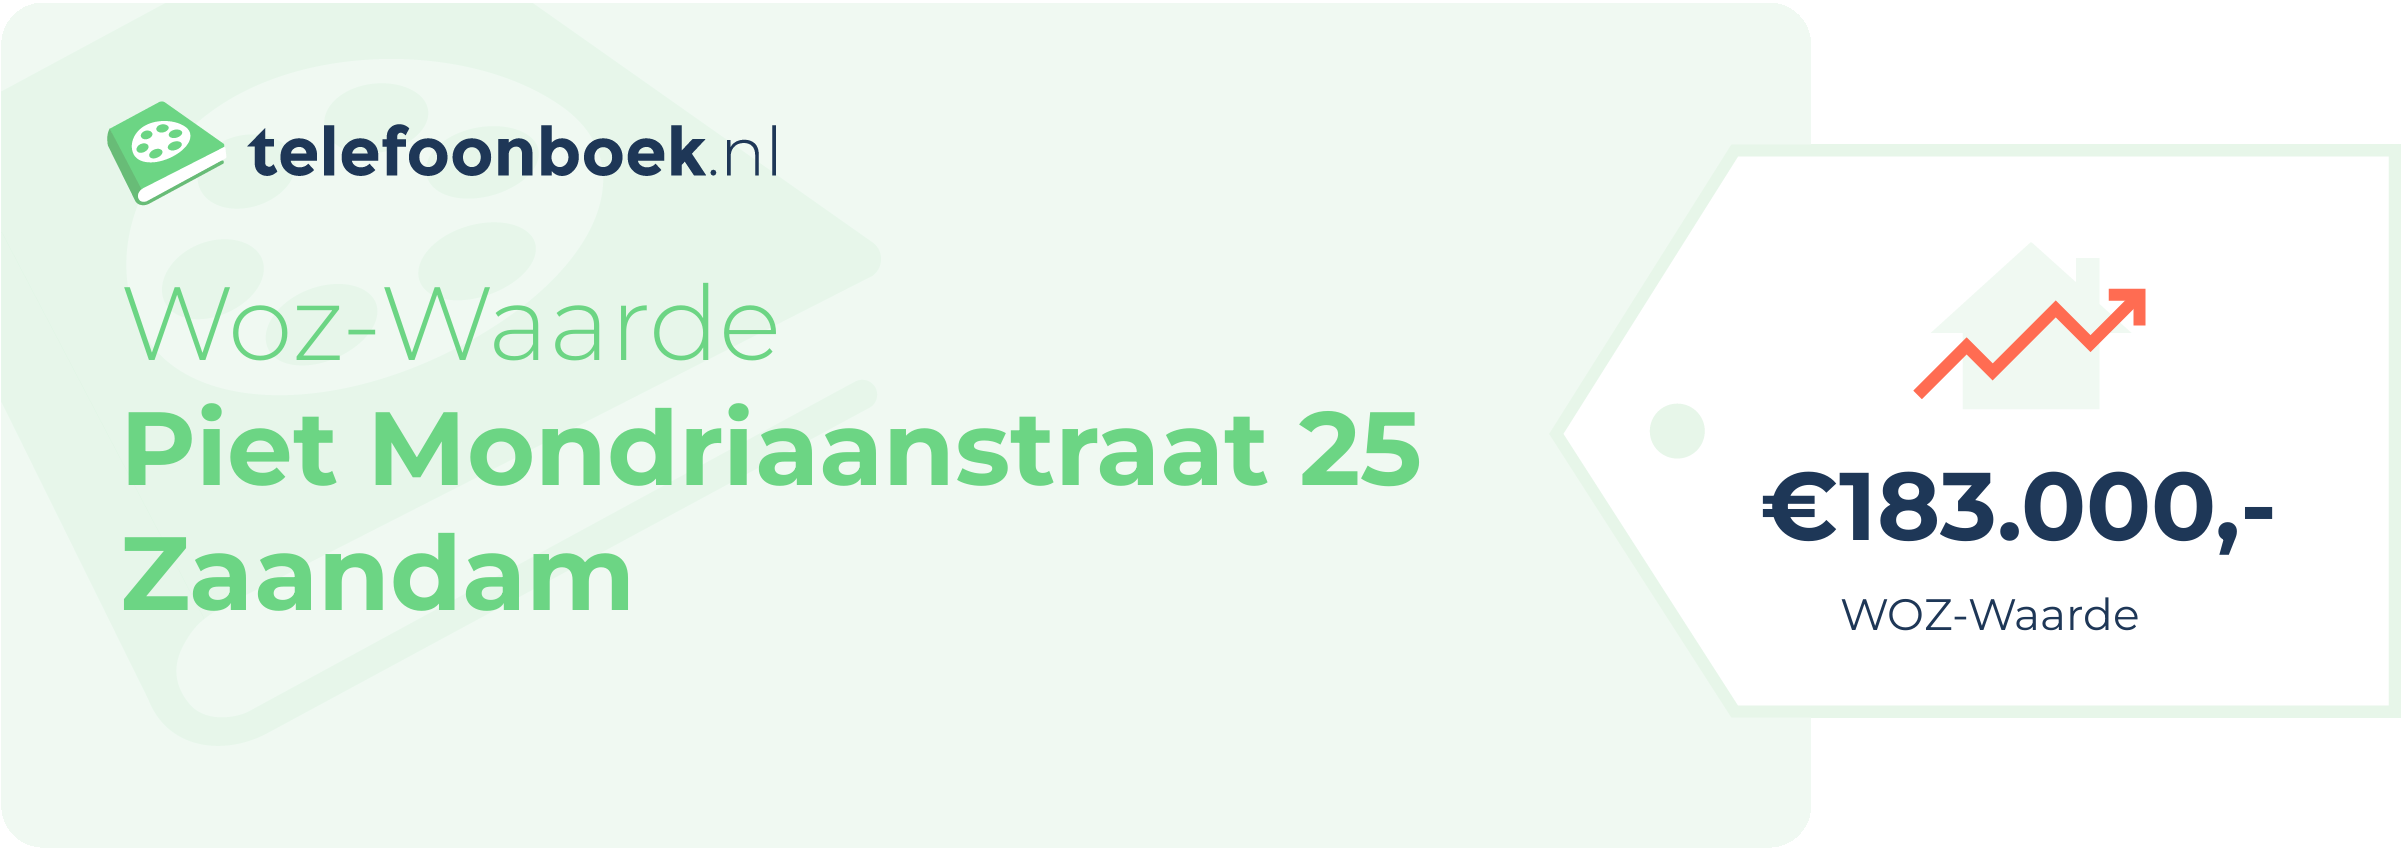 WOZ-waarde Piet Mondriaanstraat 25 Zaandam